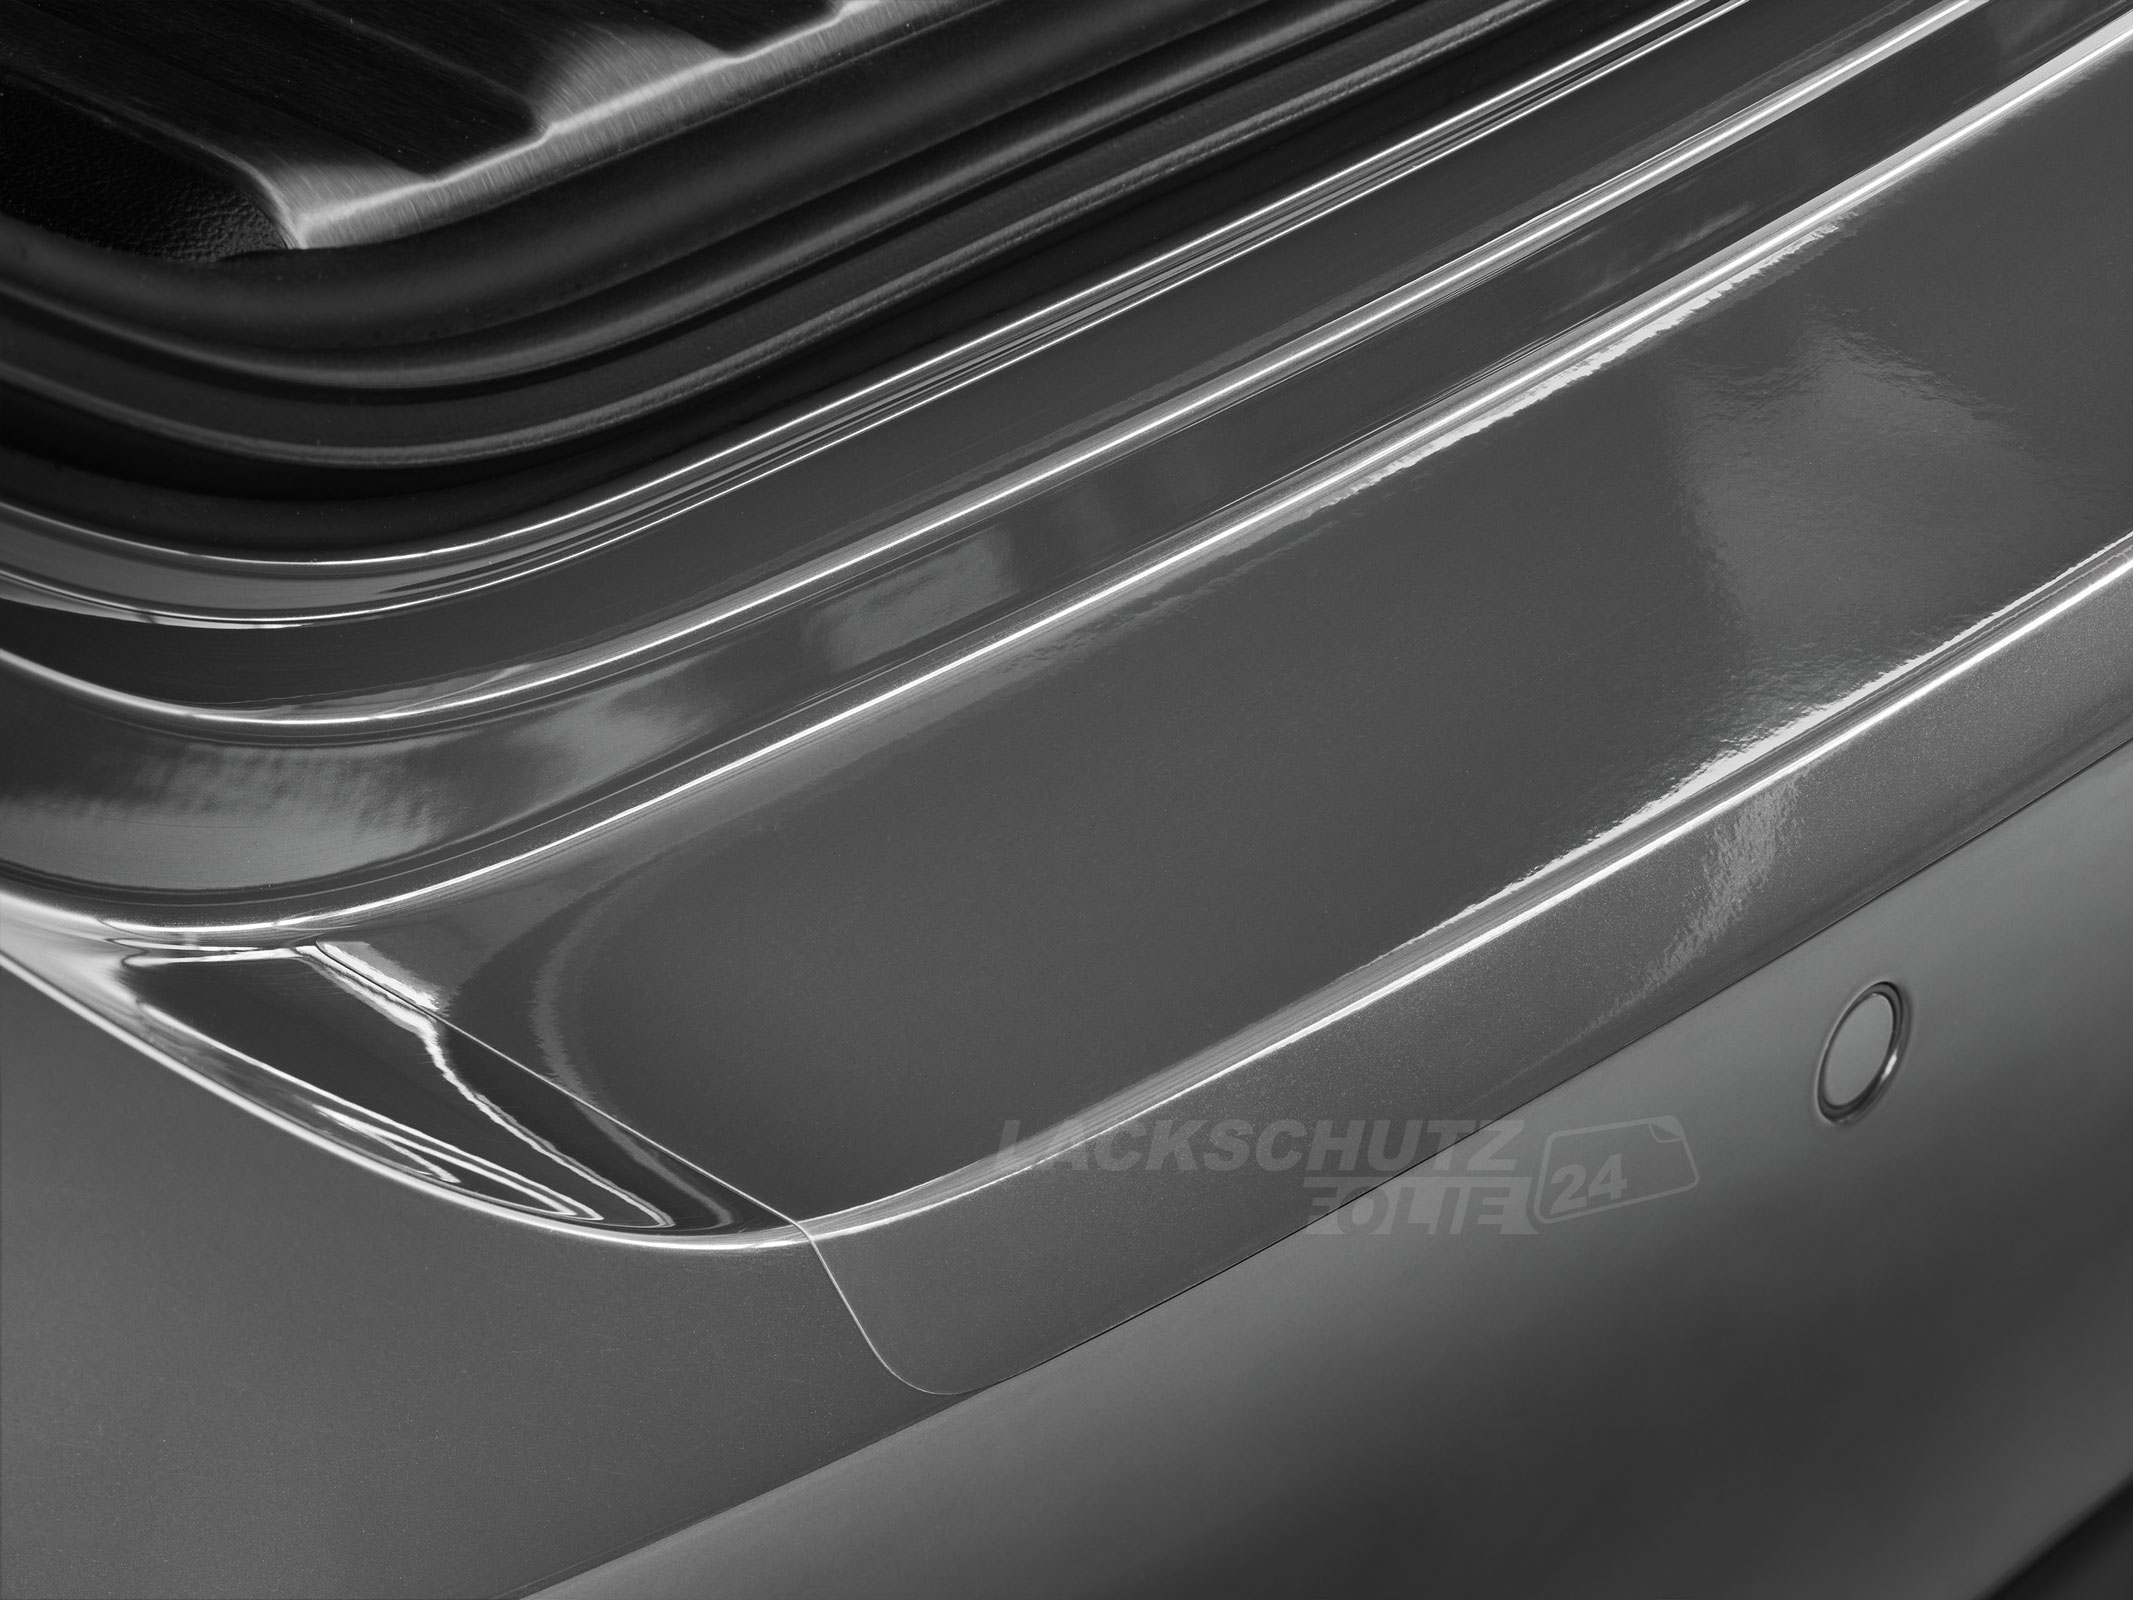 Ladekantenschutzfolie - Transparent Glatt Hochglänzend 240 µm stark für Renault Clio (III) Typ R, ab BJ 2006-2012